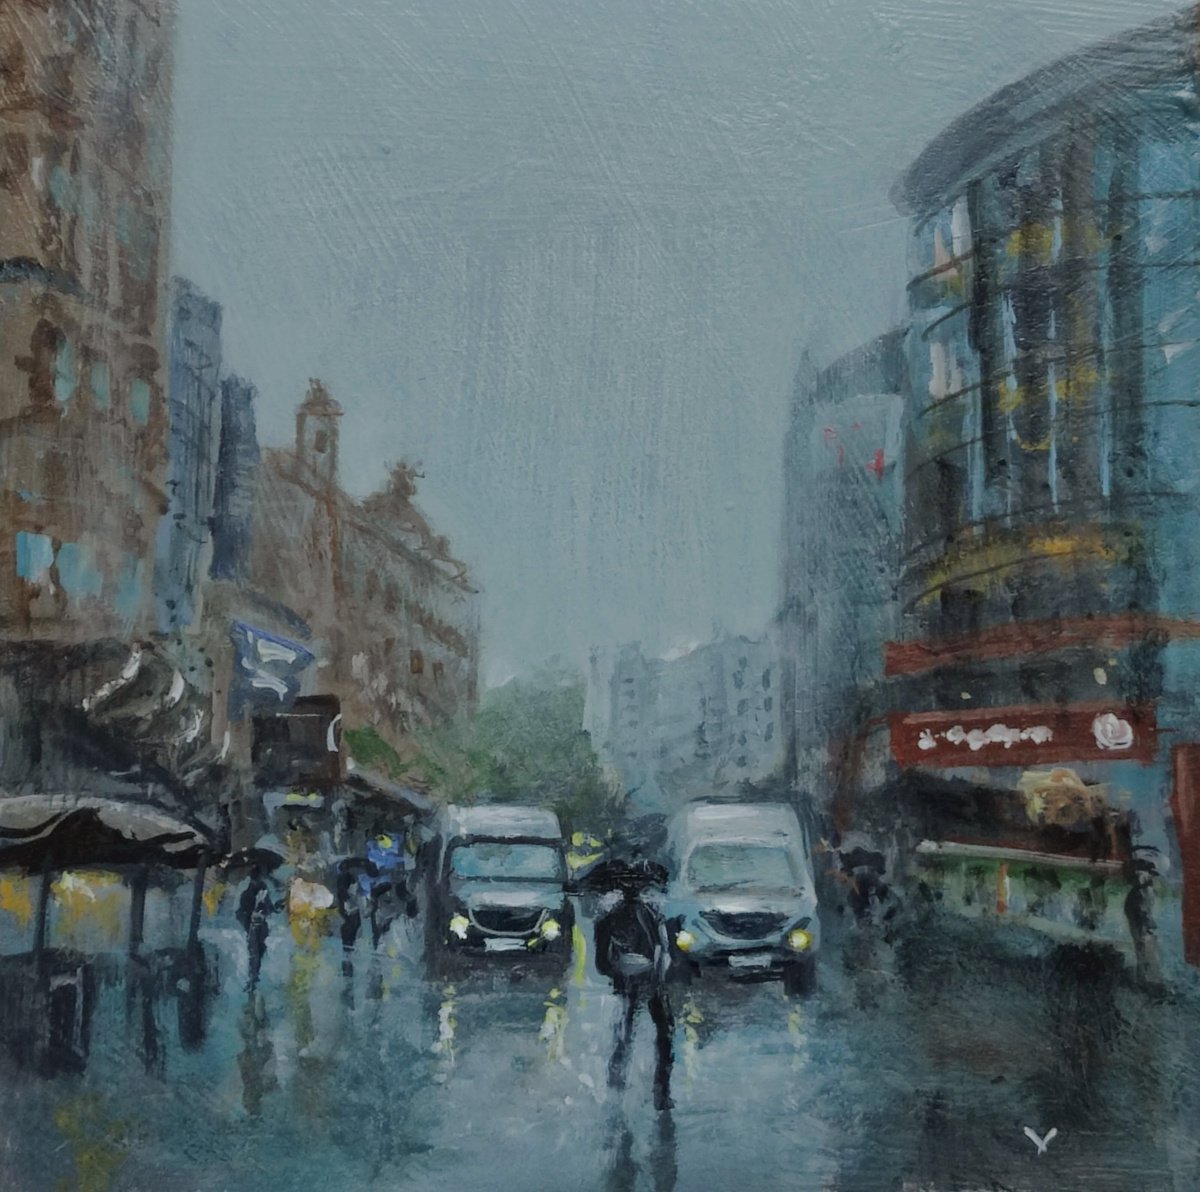 London City in rain by Vishalandra Dakur